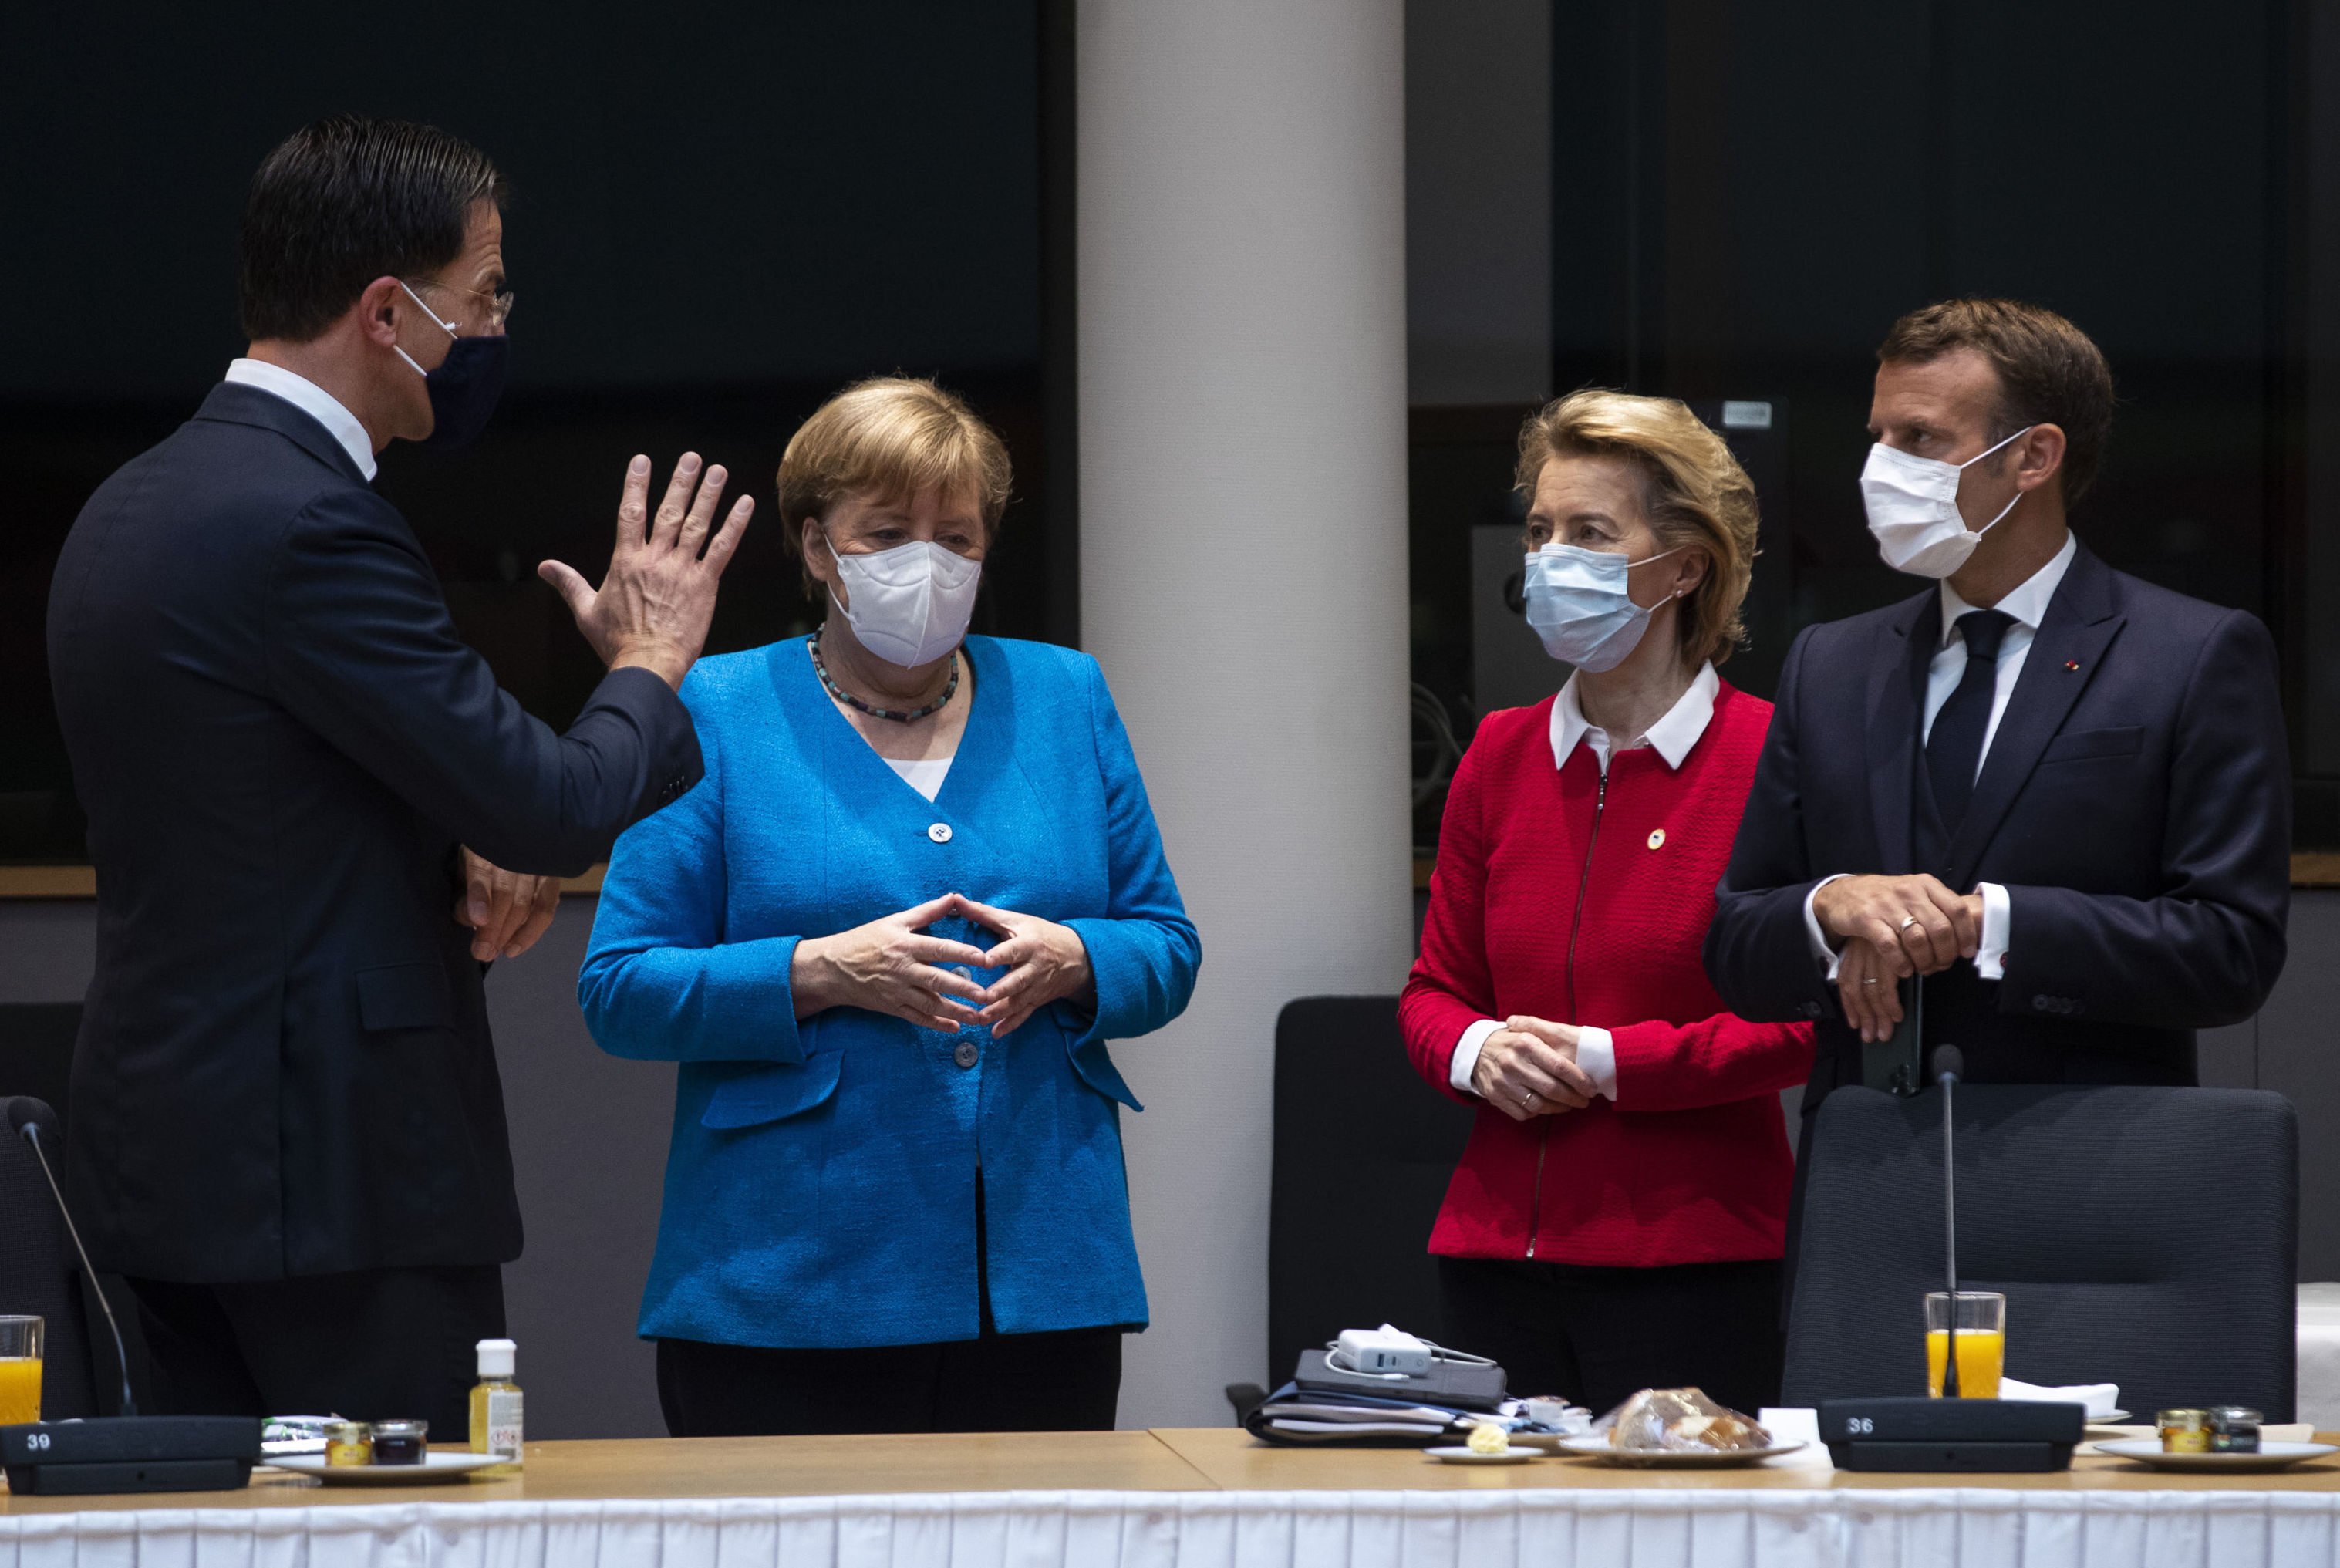 Слева направо премьер-министр Нидерландов Марк Рютте, канцлер Германии Ангела Меркель, председатель Европейской комиссии Урсула фон дер Ляйен и президент Франции Эммануэль Макрон во время встречи на полях саммита ЕС в Брюсселе в субботу, 18 июля 2020 года